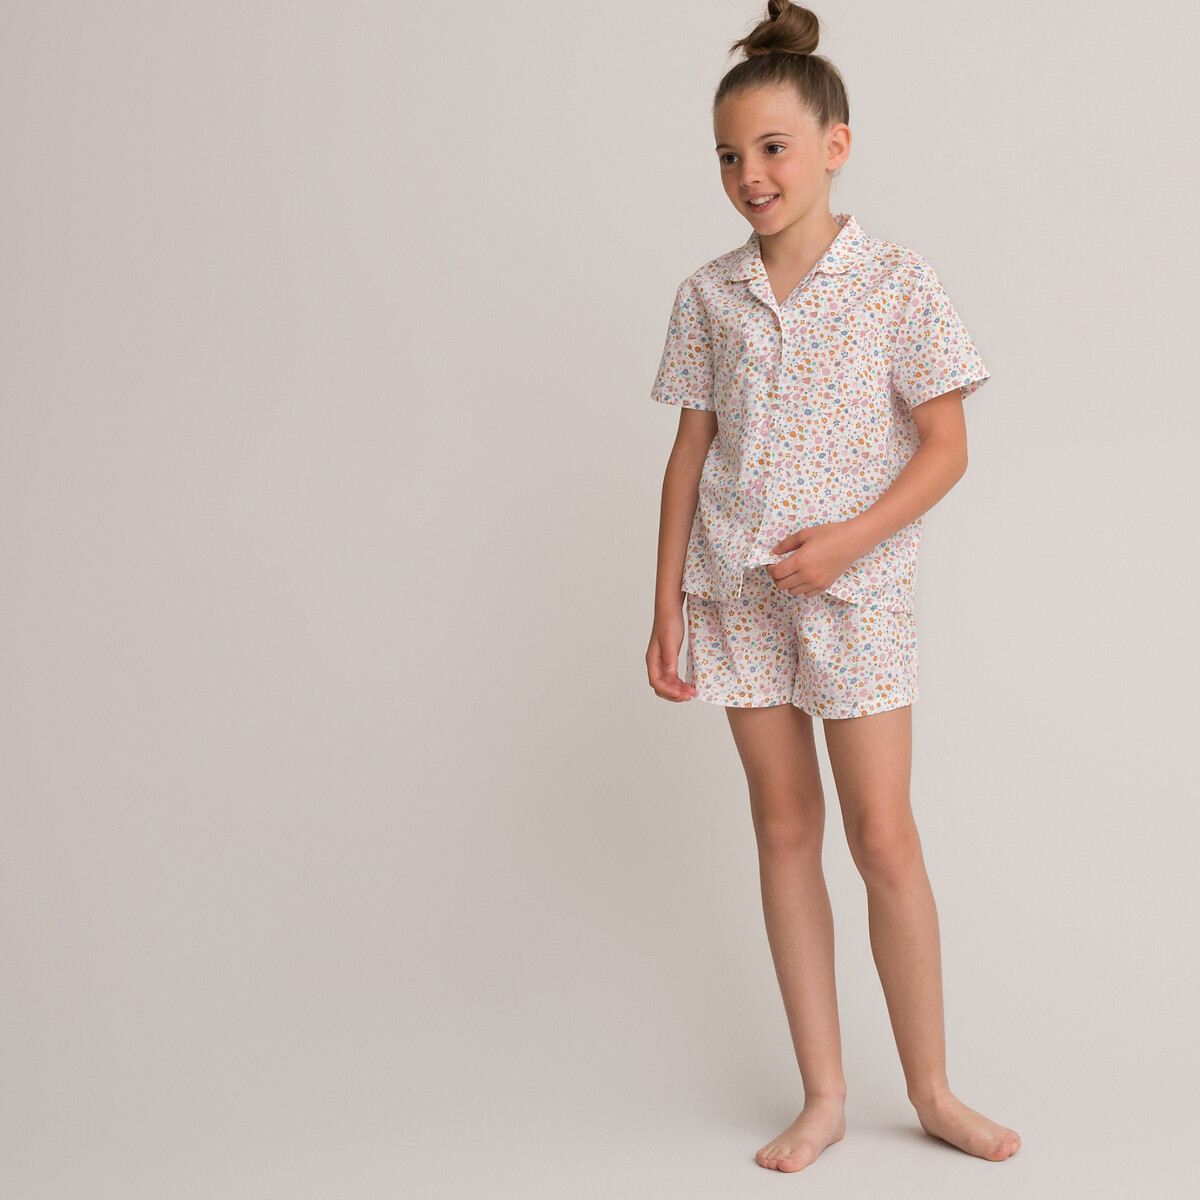 Pijama com estampado floral, 3-14 anos